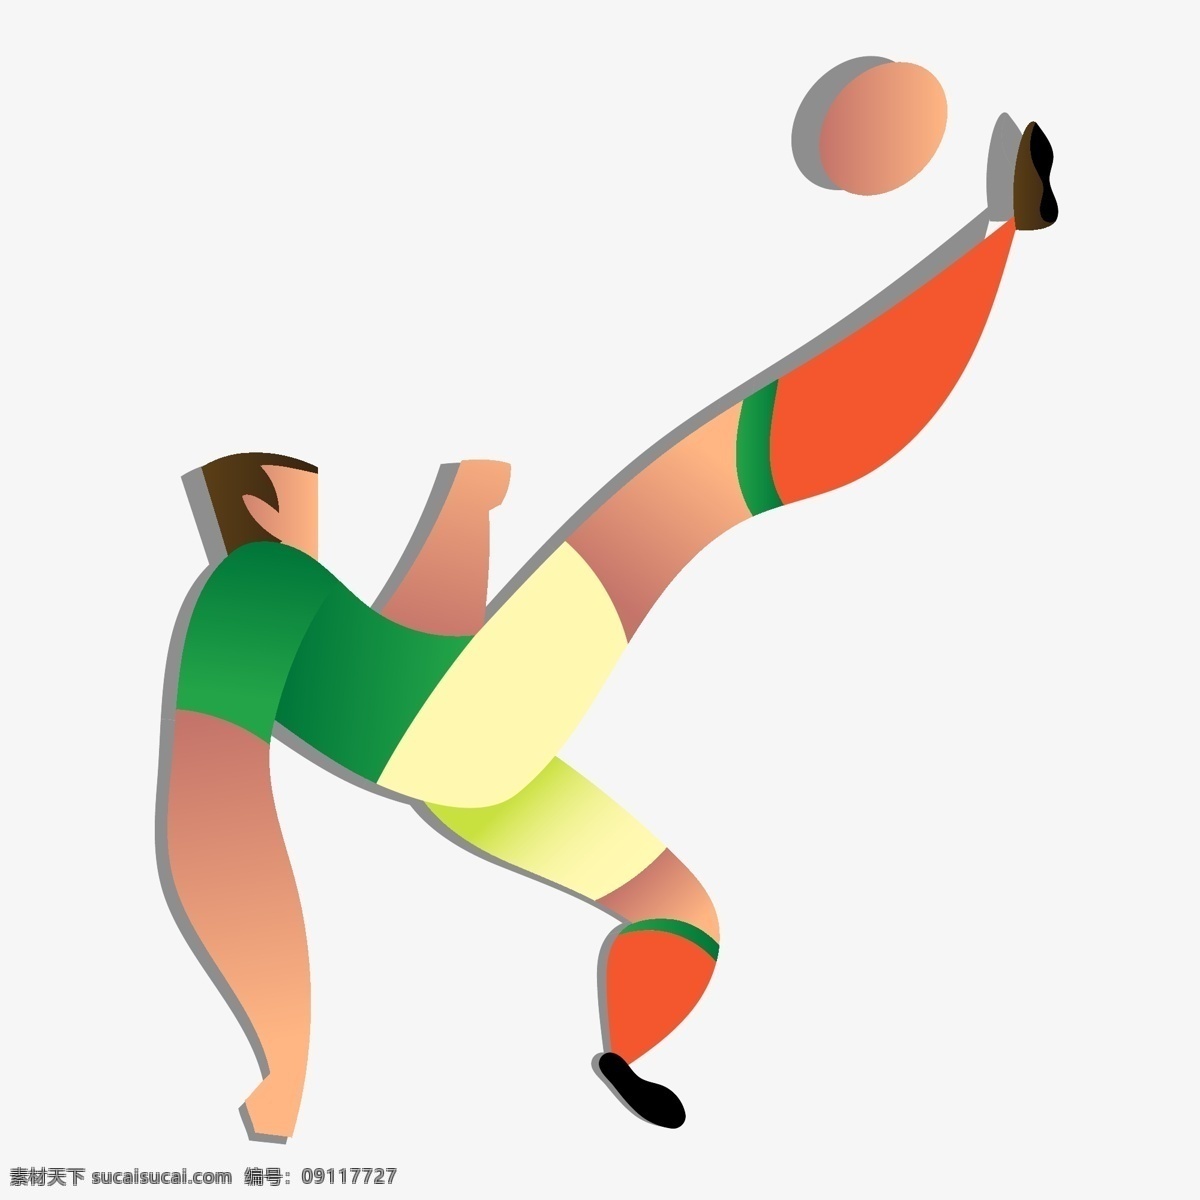 俄罗斯 世界杯 绿色 卡通 运球 人物 矢量 图案 2018 足球 欧冠 矢量足球 冠军 教练 球队 足球装饰 装饰图案 矢量装饰 足球风